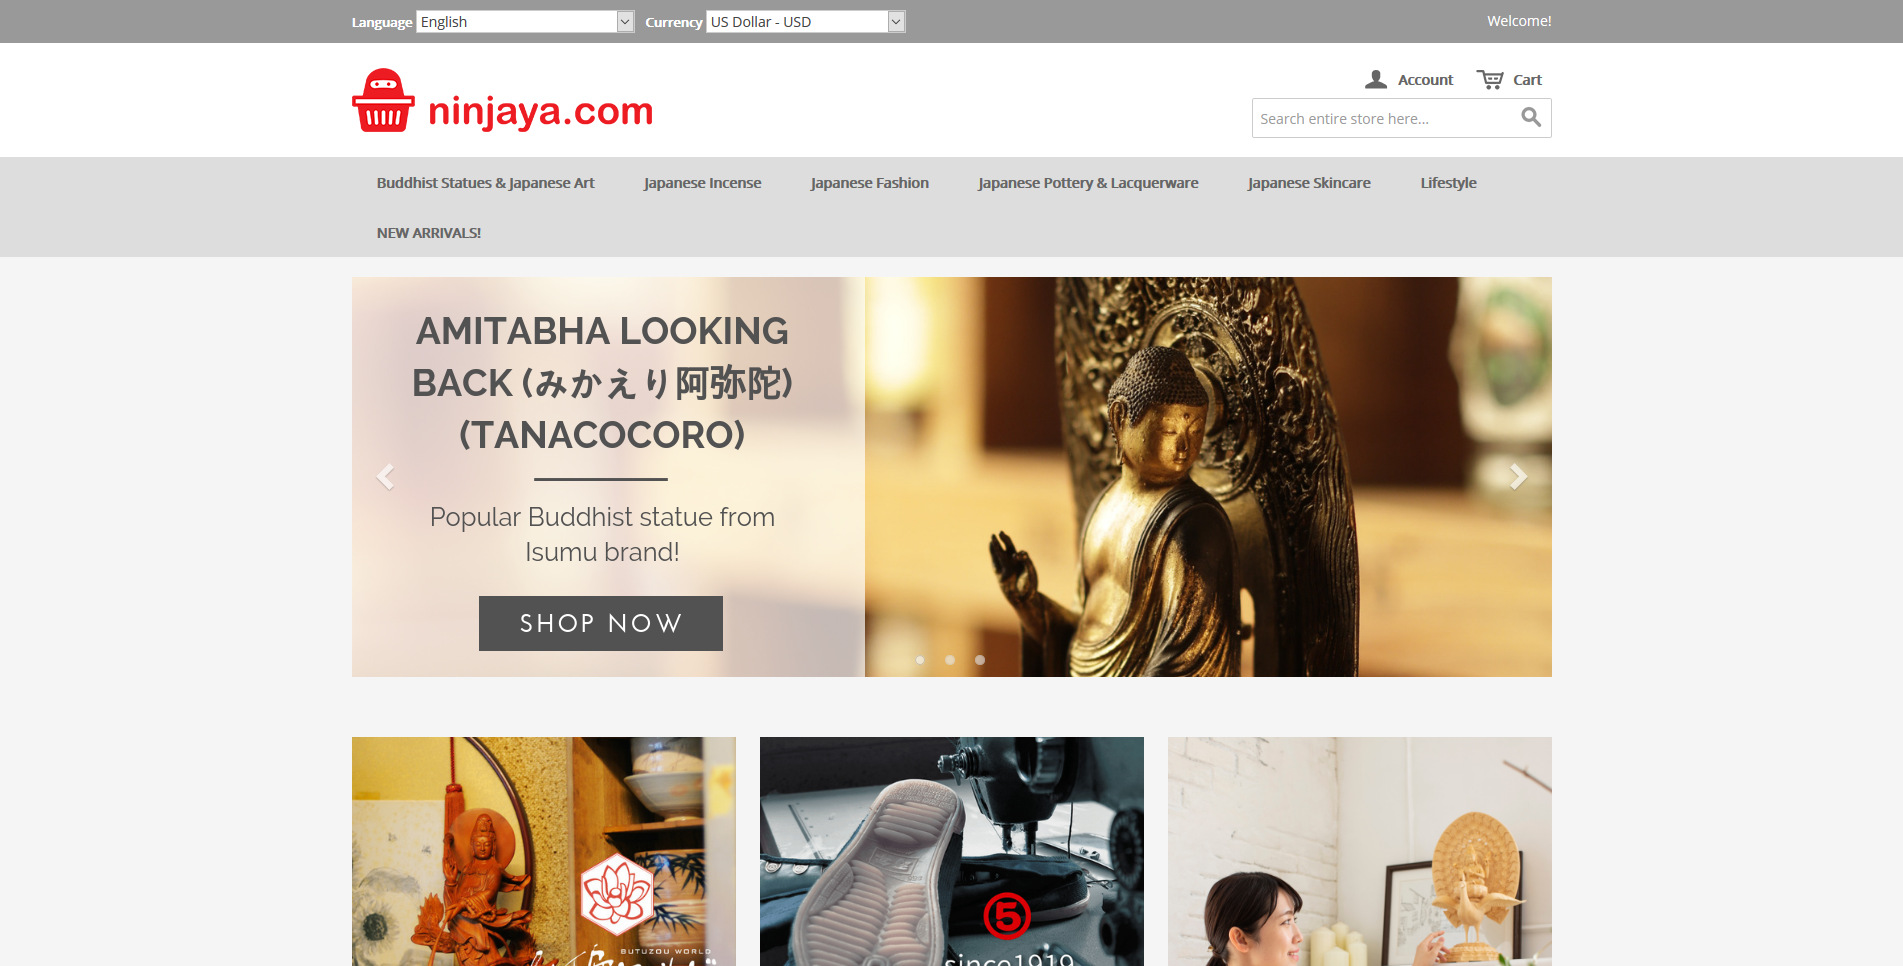 ninjaya.com